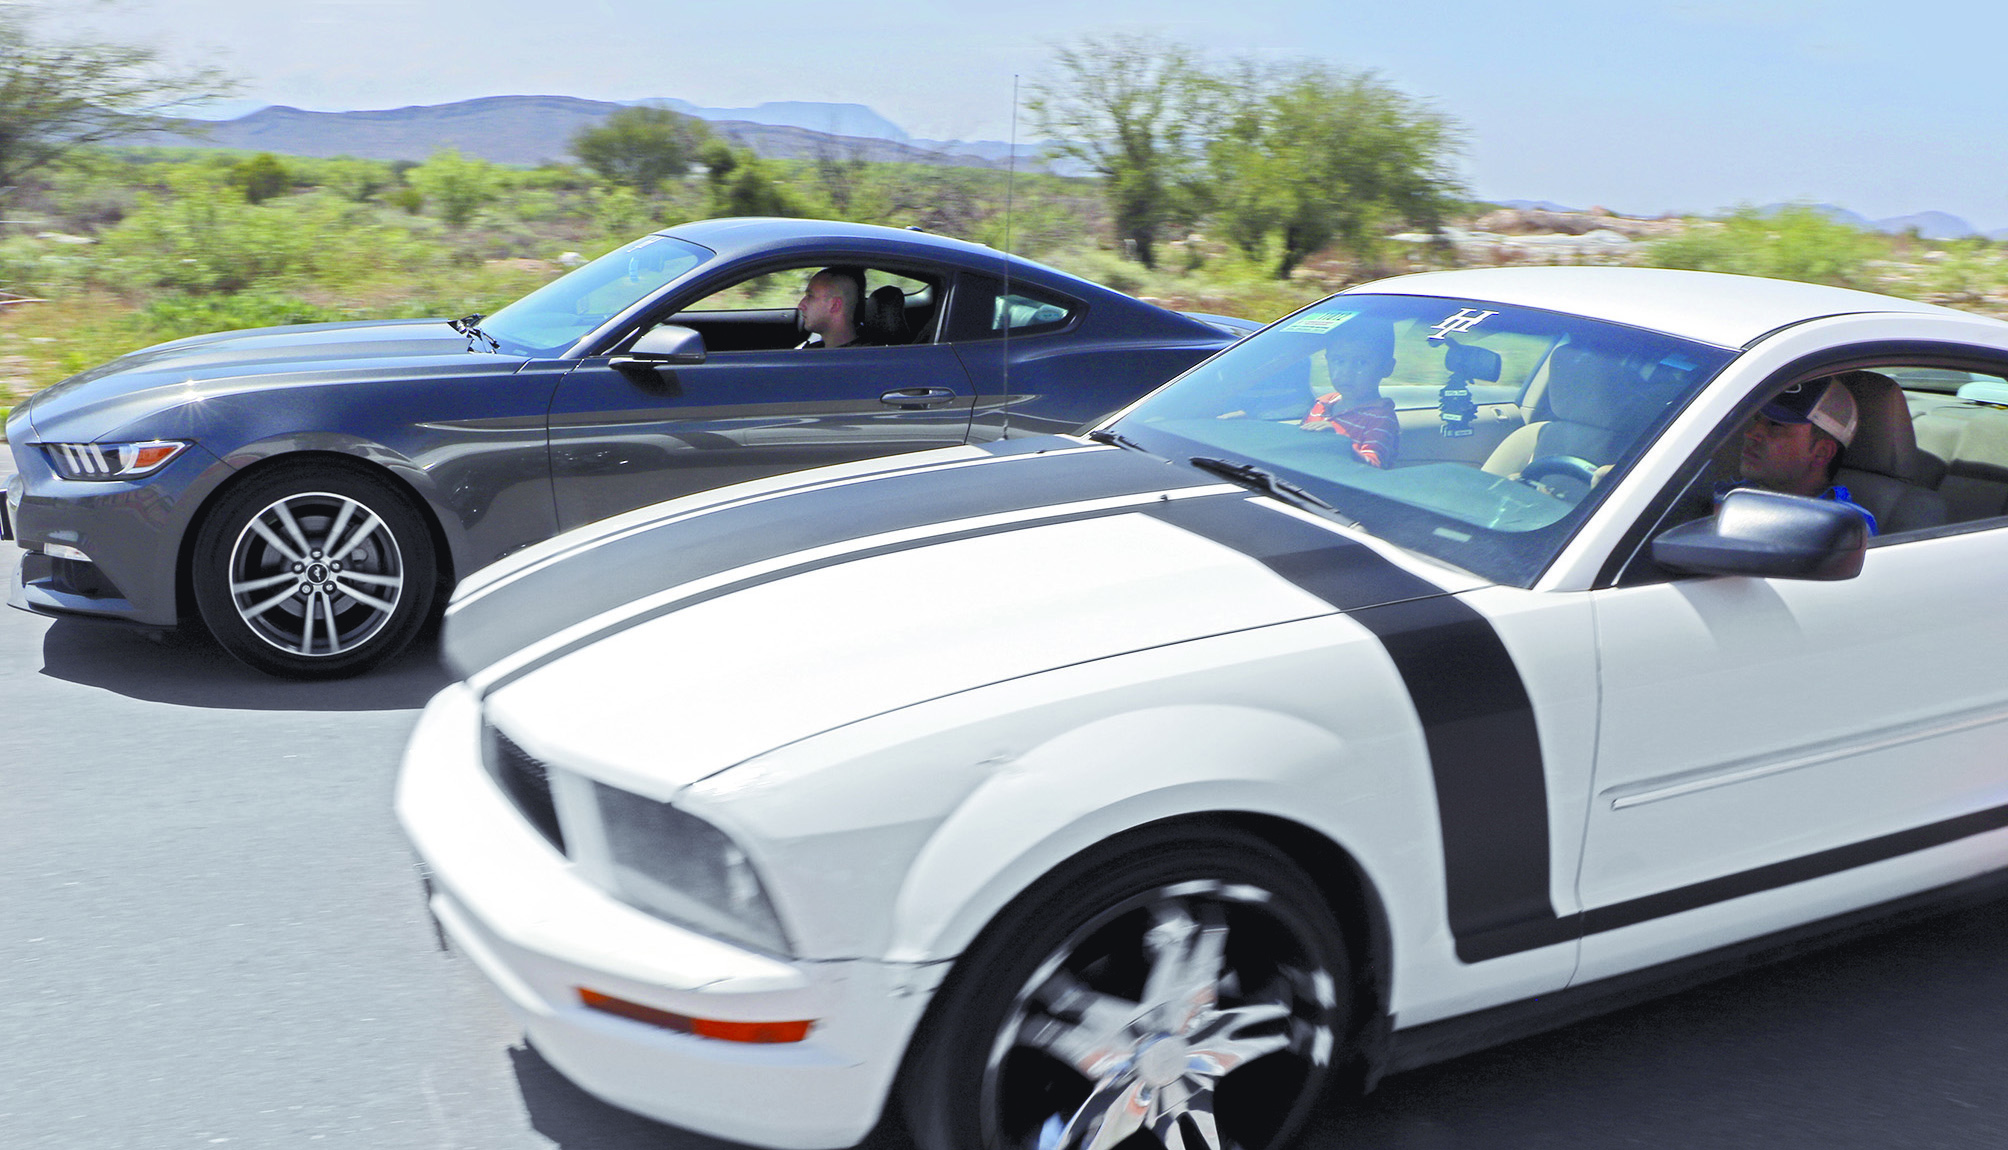 $!¿Porqué los amantes del Mustang en Coahuila son diferentes a todos los demás?